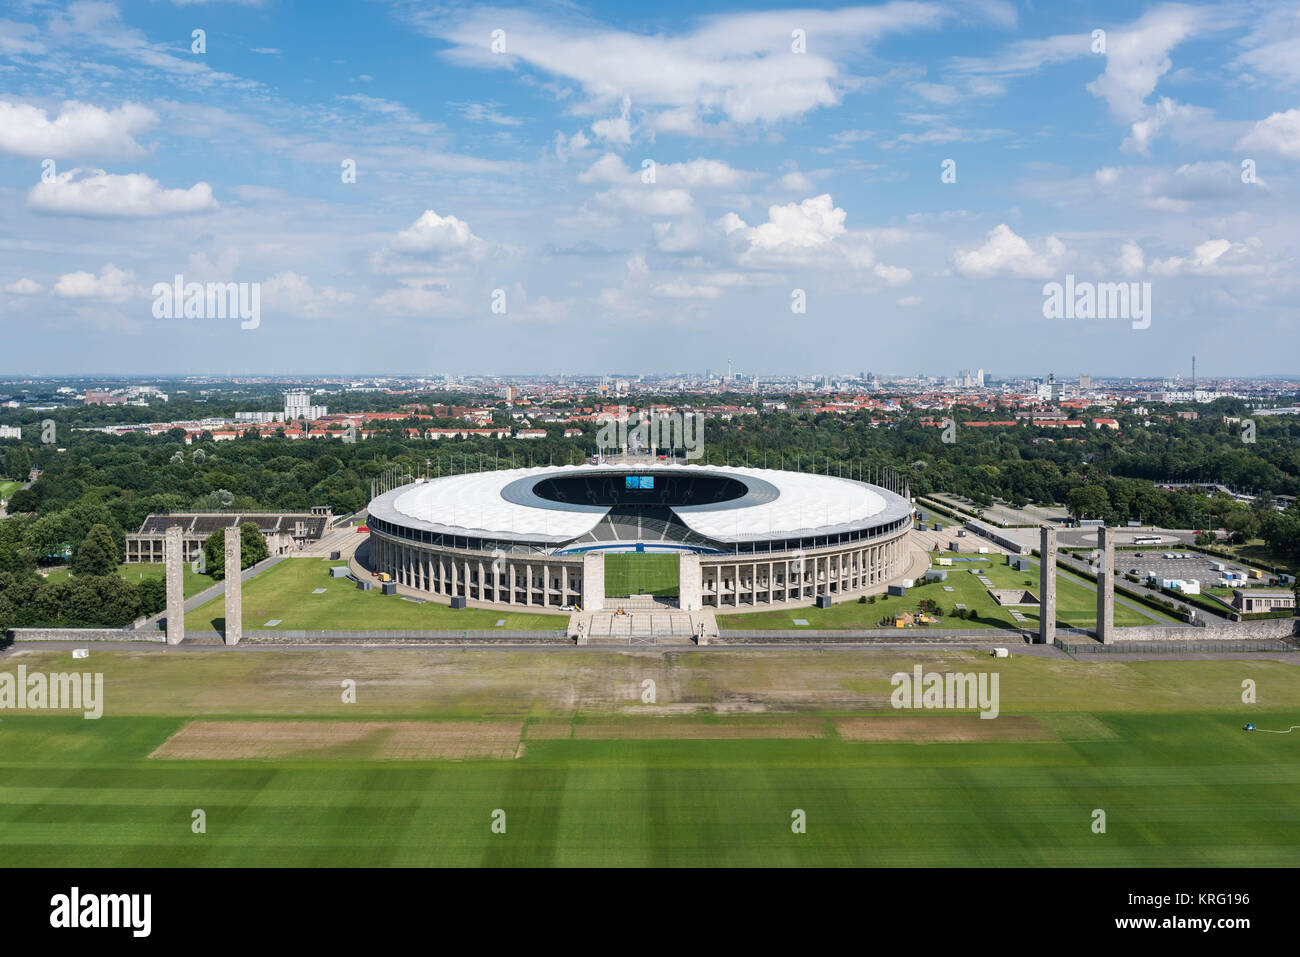 Berlin. L'Allemagne. Olympiastadion (stade olympique), initialement conçu par Werner Mars (1894-1976) pour l'été de 1936 Jeux Olympiques. Banque D'Images